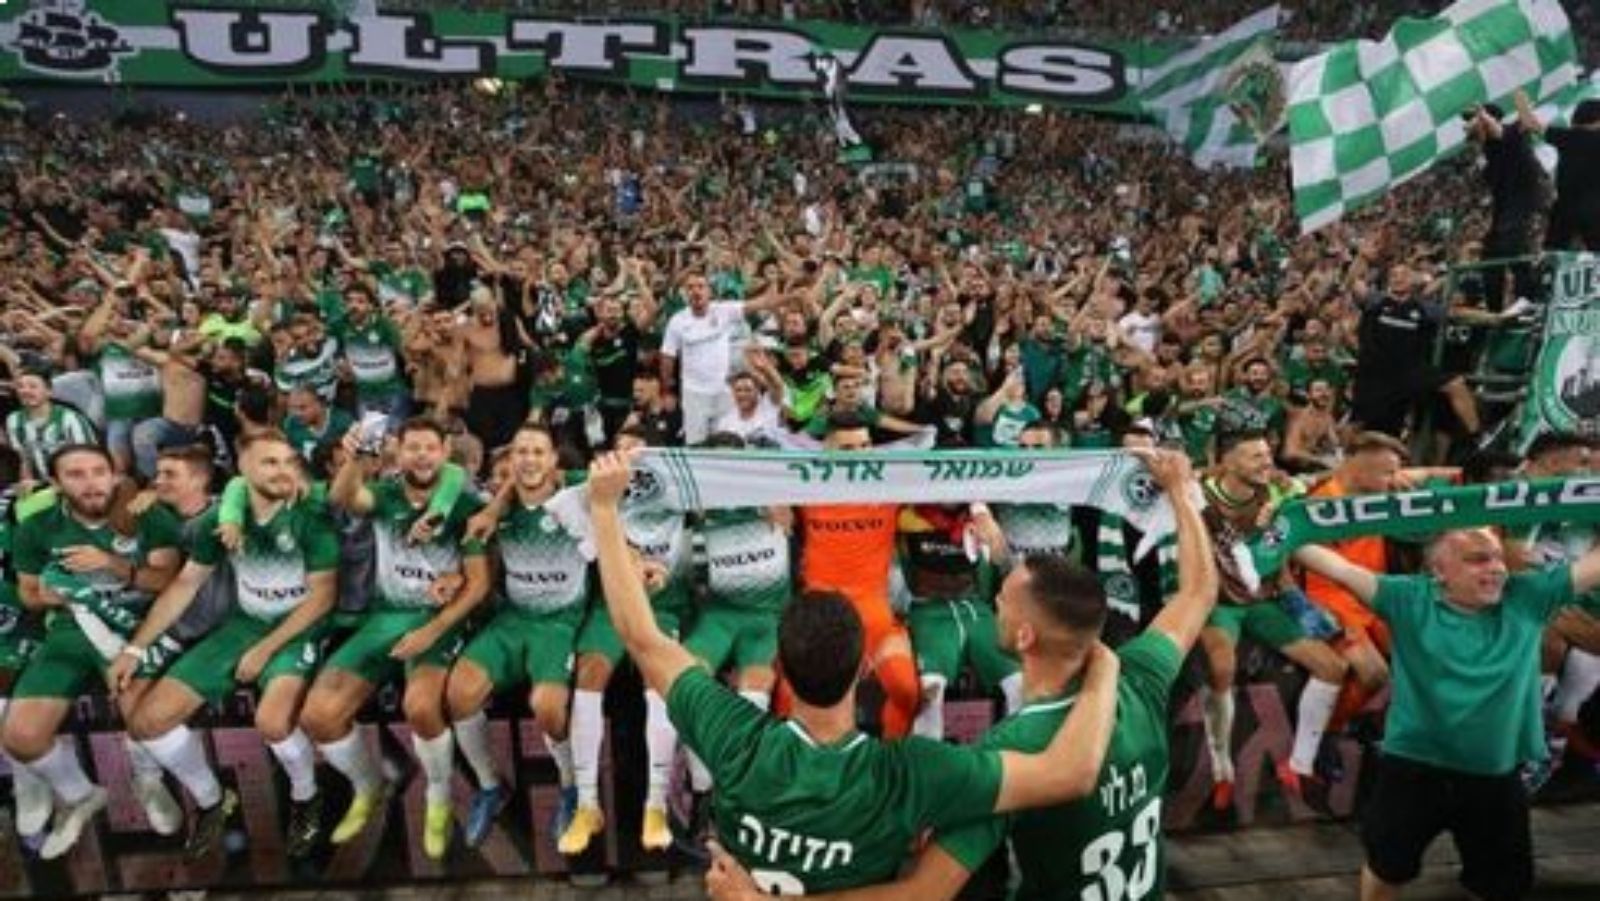 
                <strong>30.000 Fans fiebern im Stadion</strong><br>
                30.000 Fans von Maccabi Haifa peitschten ihr Team am letzten Spieltag der israelischen Meisterrunde nach vorn. Mit Erfolg: Am Ende besiegte der nun 13-malige Champion die Gäste von Hapoel Be'er Sheva mit 3:2 und machte den ersten Premier-League-Titel seit genau zehn Jahren perfekt. Im ausverkauften Sammy-Ofer-Stadion gab es danach kein Halten mehr.
              